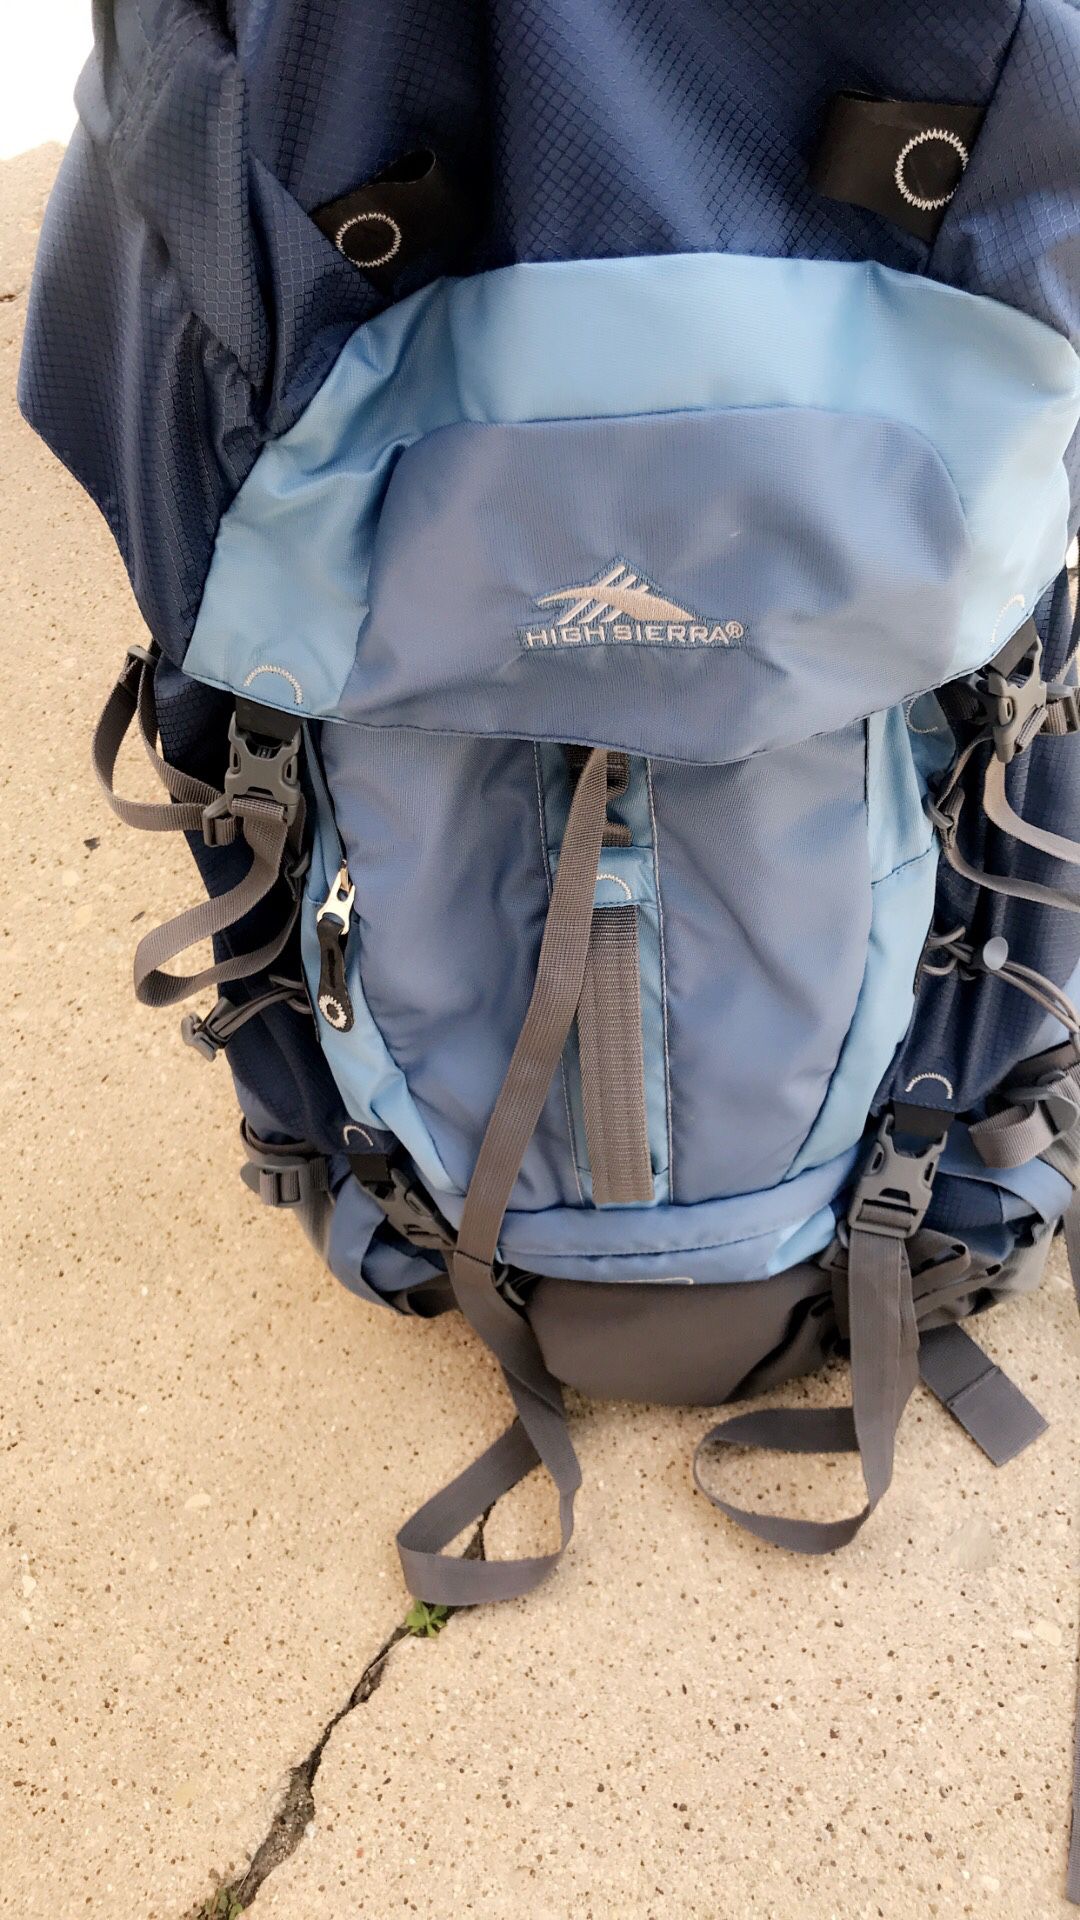 High Sierra hiking backpacks